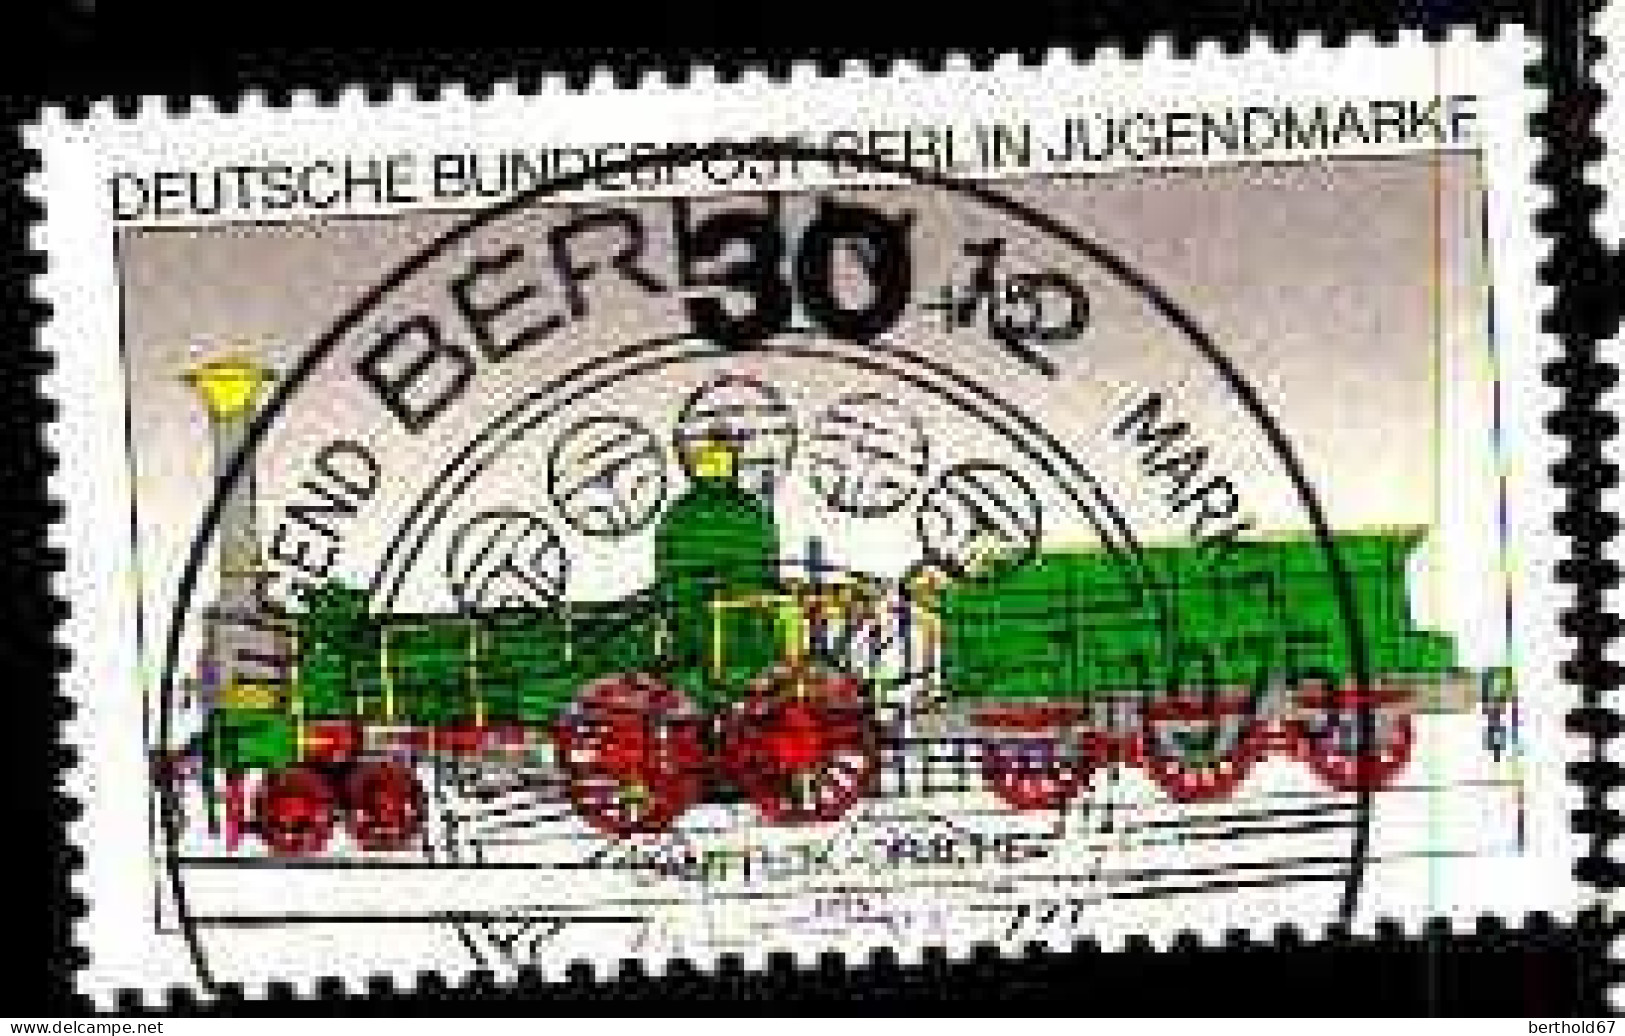 Berlin Poste Obl Yv:452 Mi:488 Jugendmarke Dampflok Drache (TB Cachet Rond) - Used Stamps